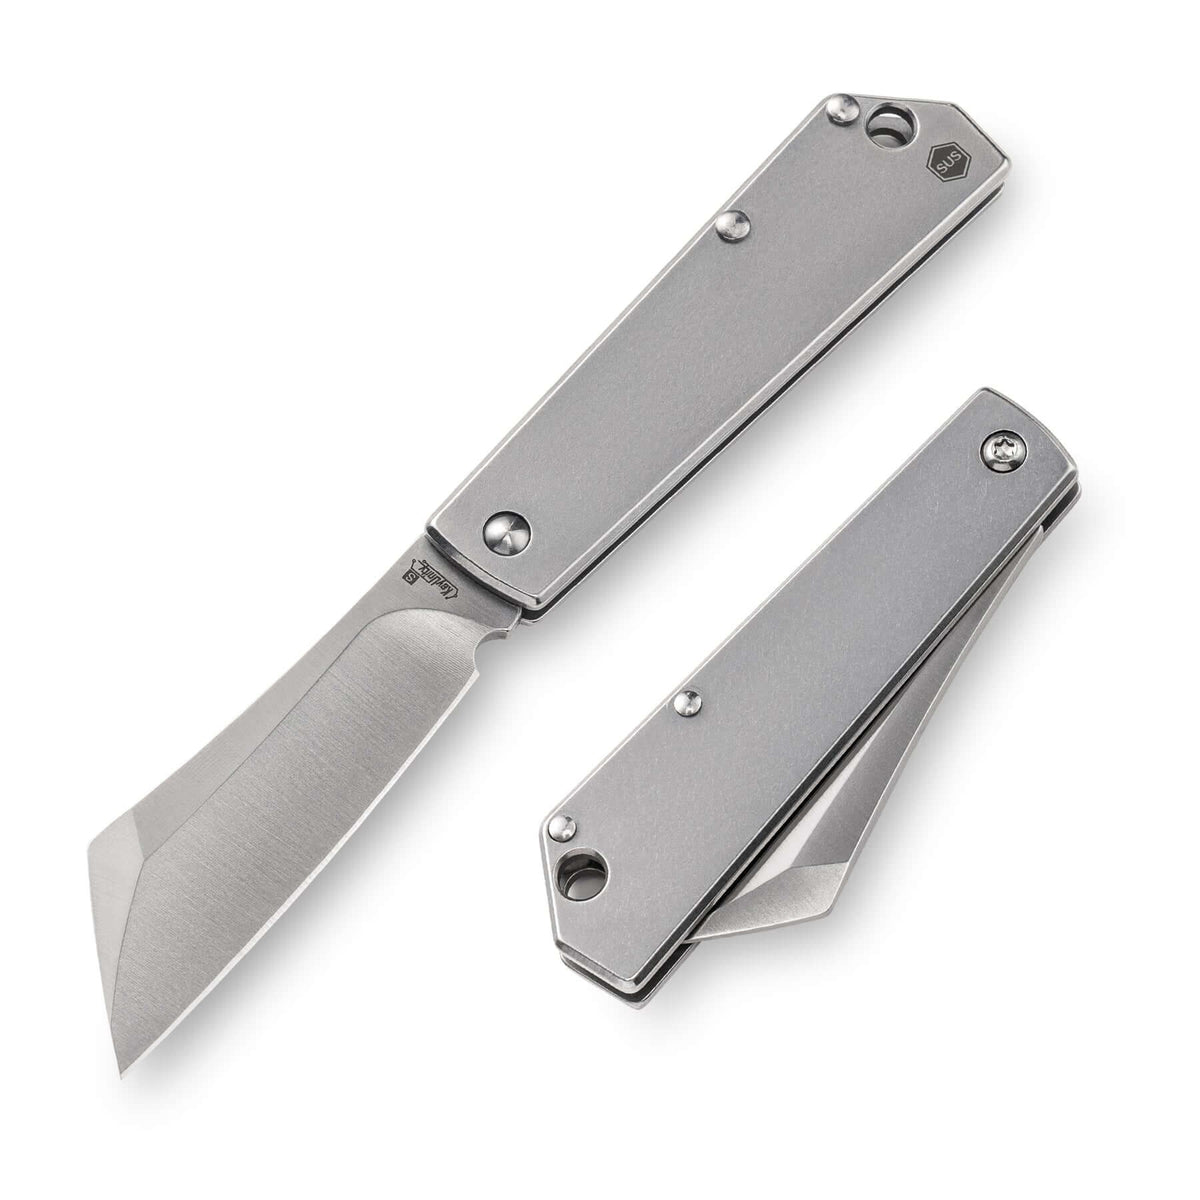 KK03 Mini Folding Knife